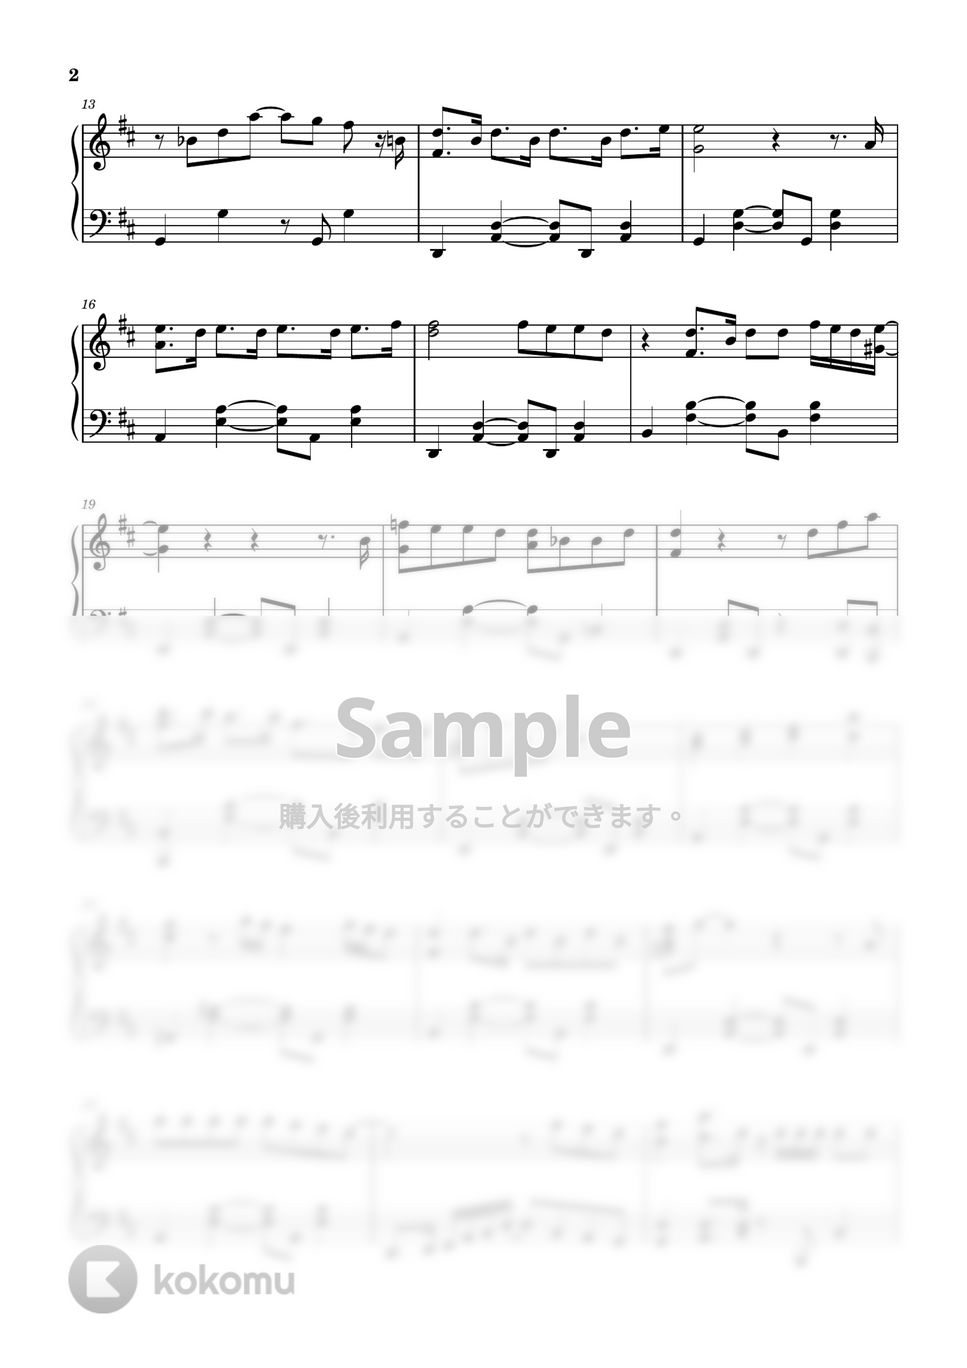 Mrs.GREEN APPLE - ダンスホール (ピアノ上級ソロ) by pianon